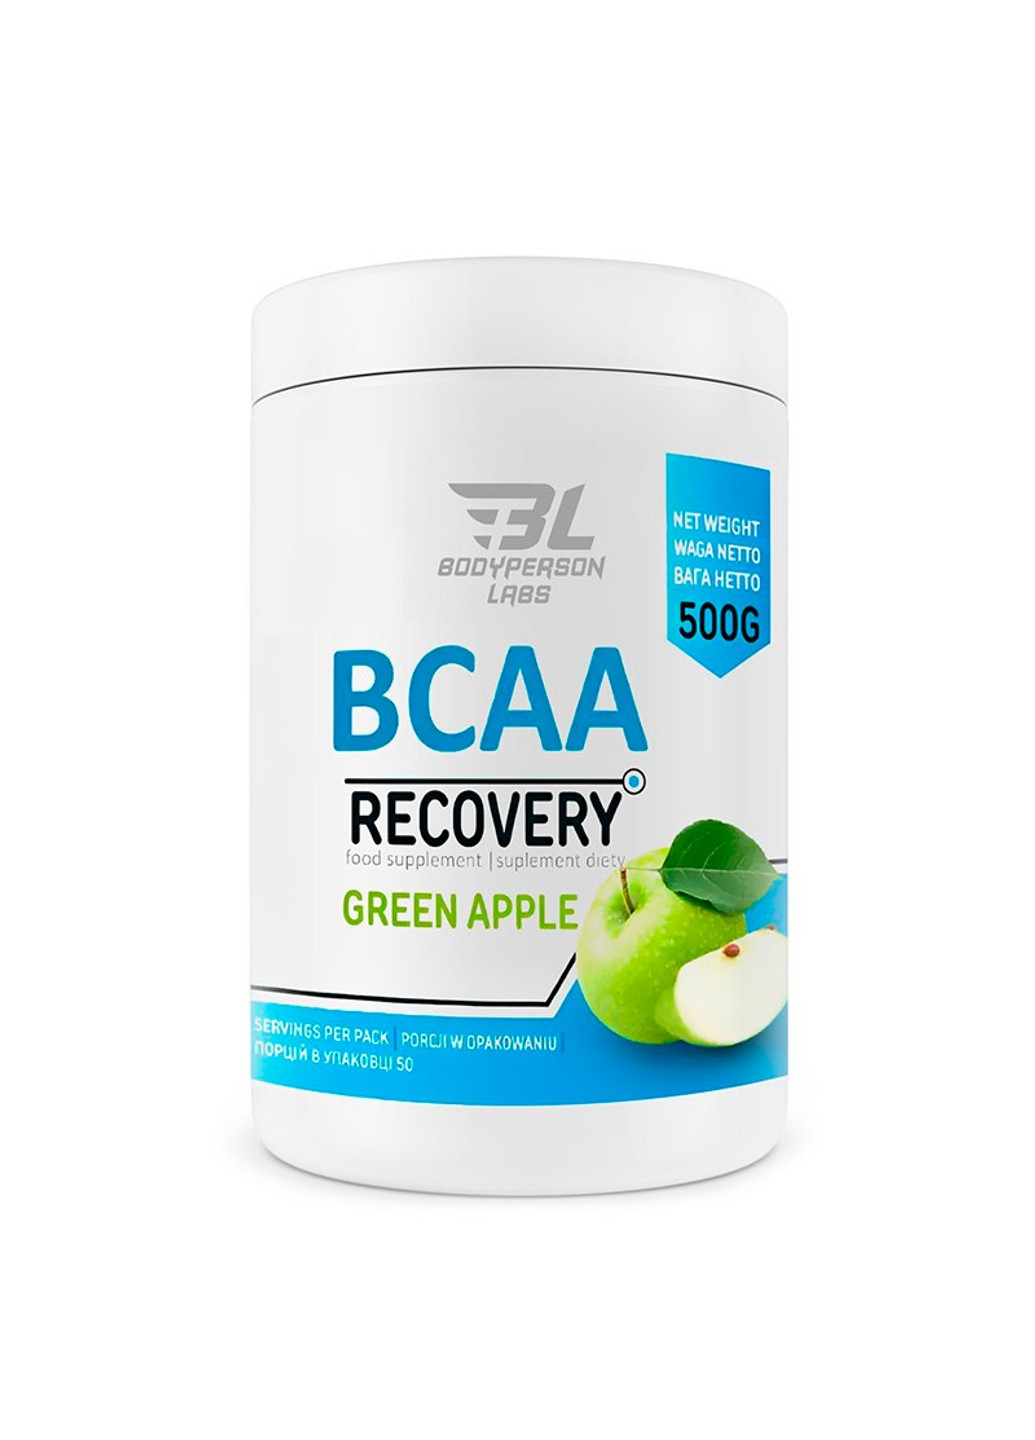 Комплекс Аминокислот ВСАА для Восстановления BCAA Recovery - 500г Bodyperson Labs (269713055)